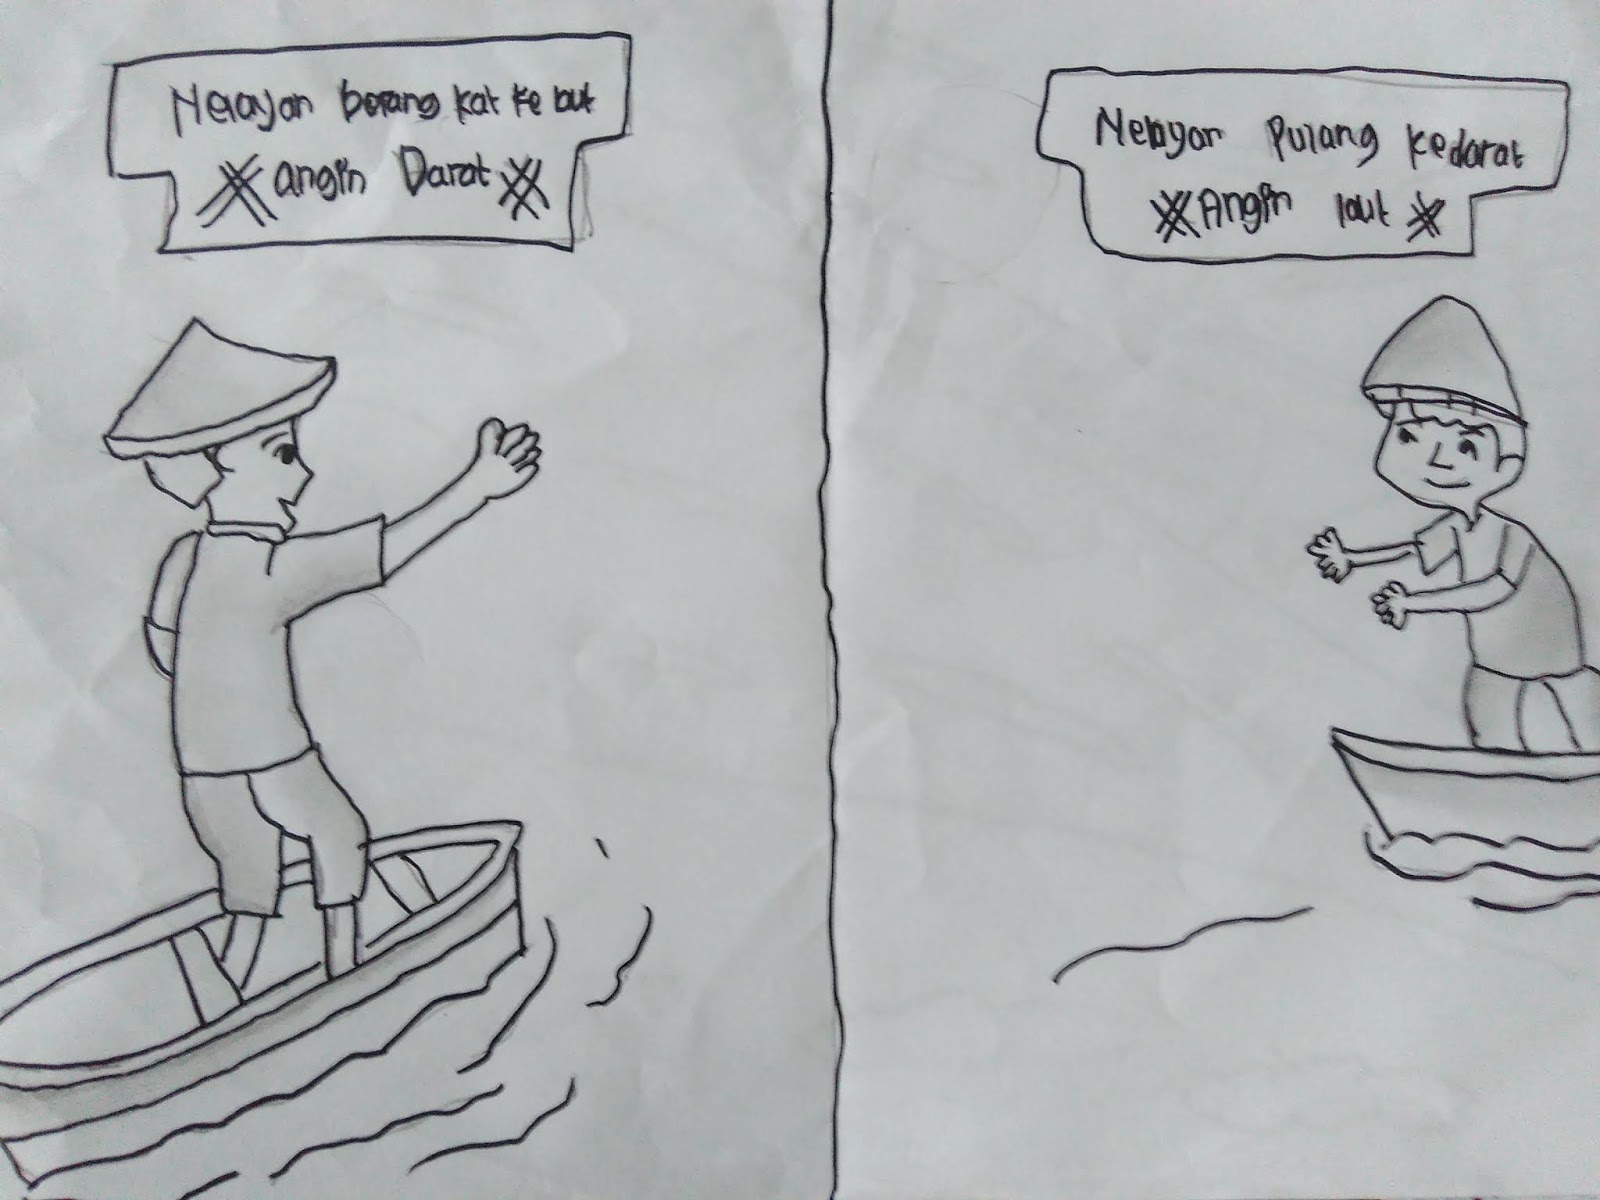 gambar Si Nelayan Muda memanfaatkan angin darat dan angin laut untuk bekerja di laut